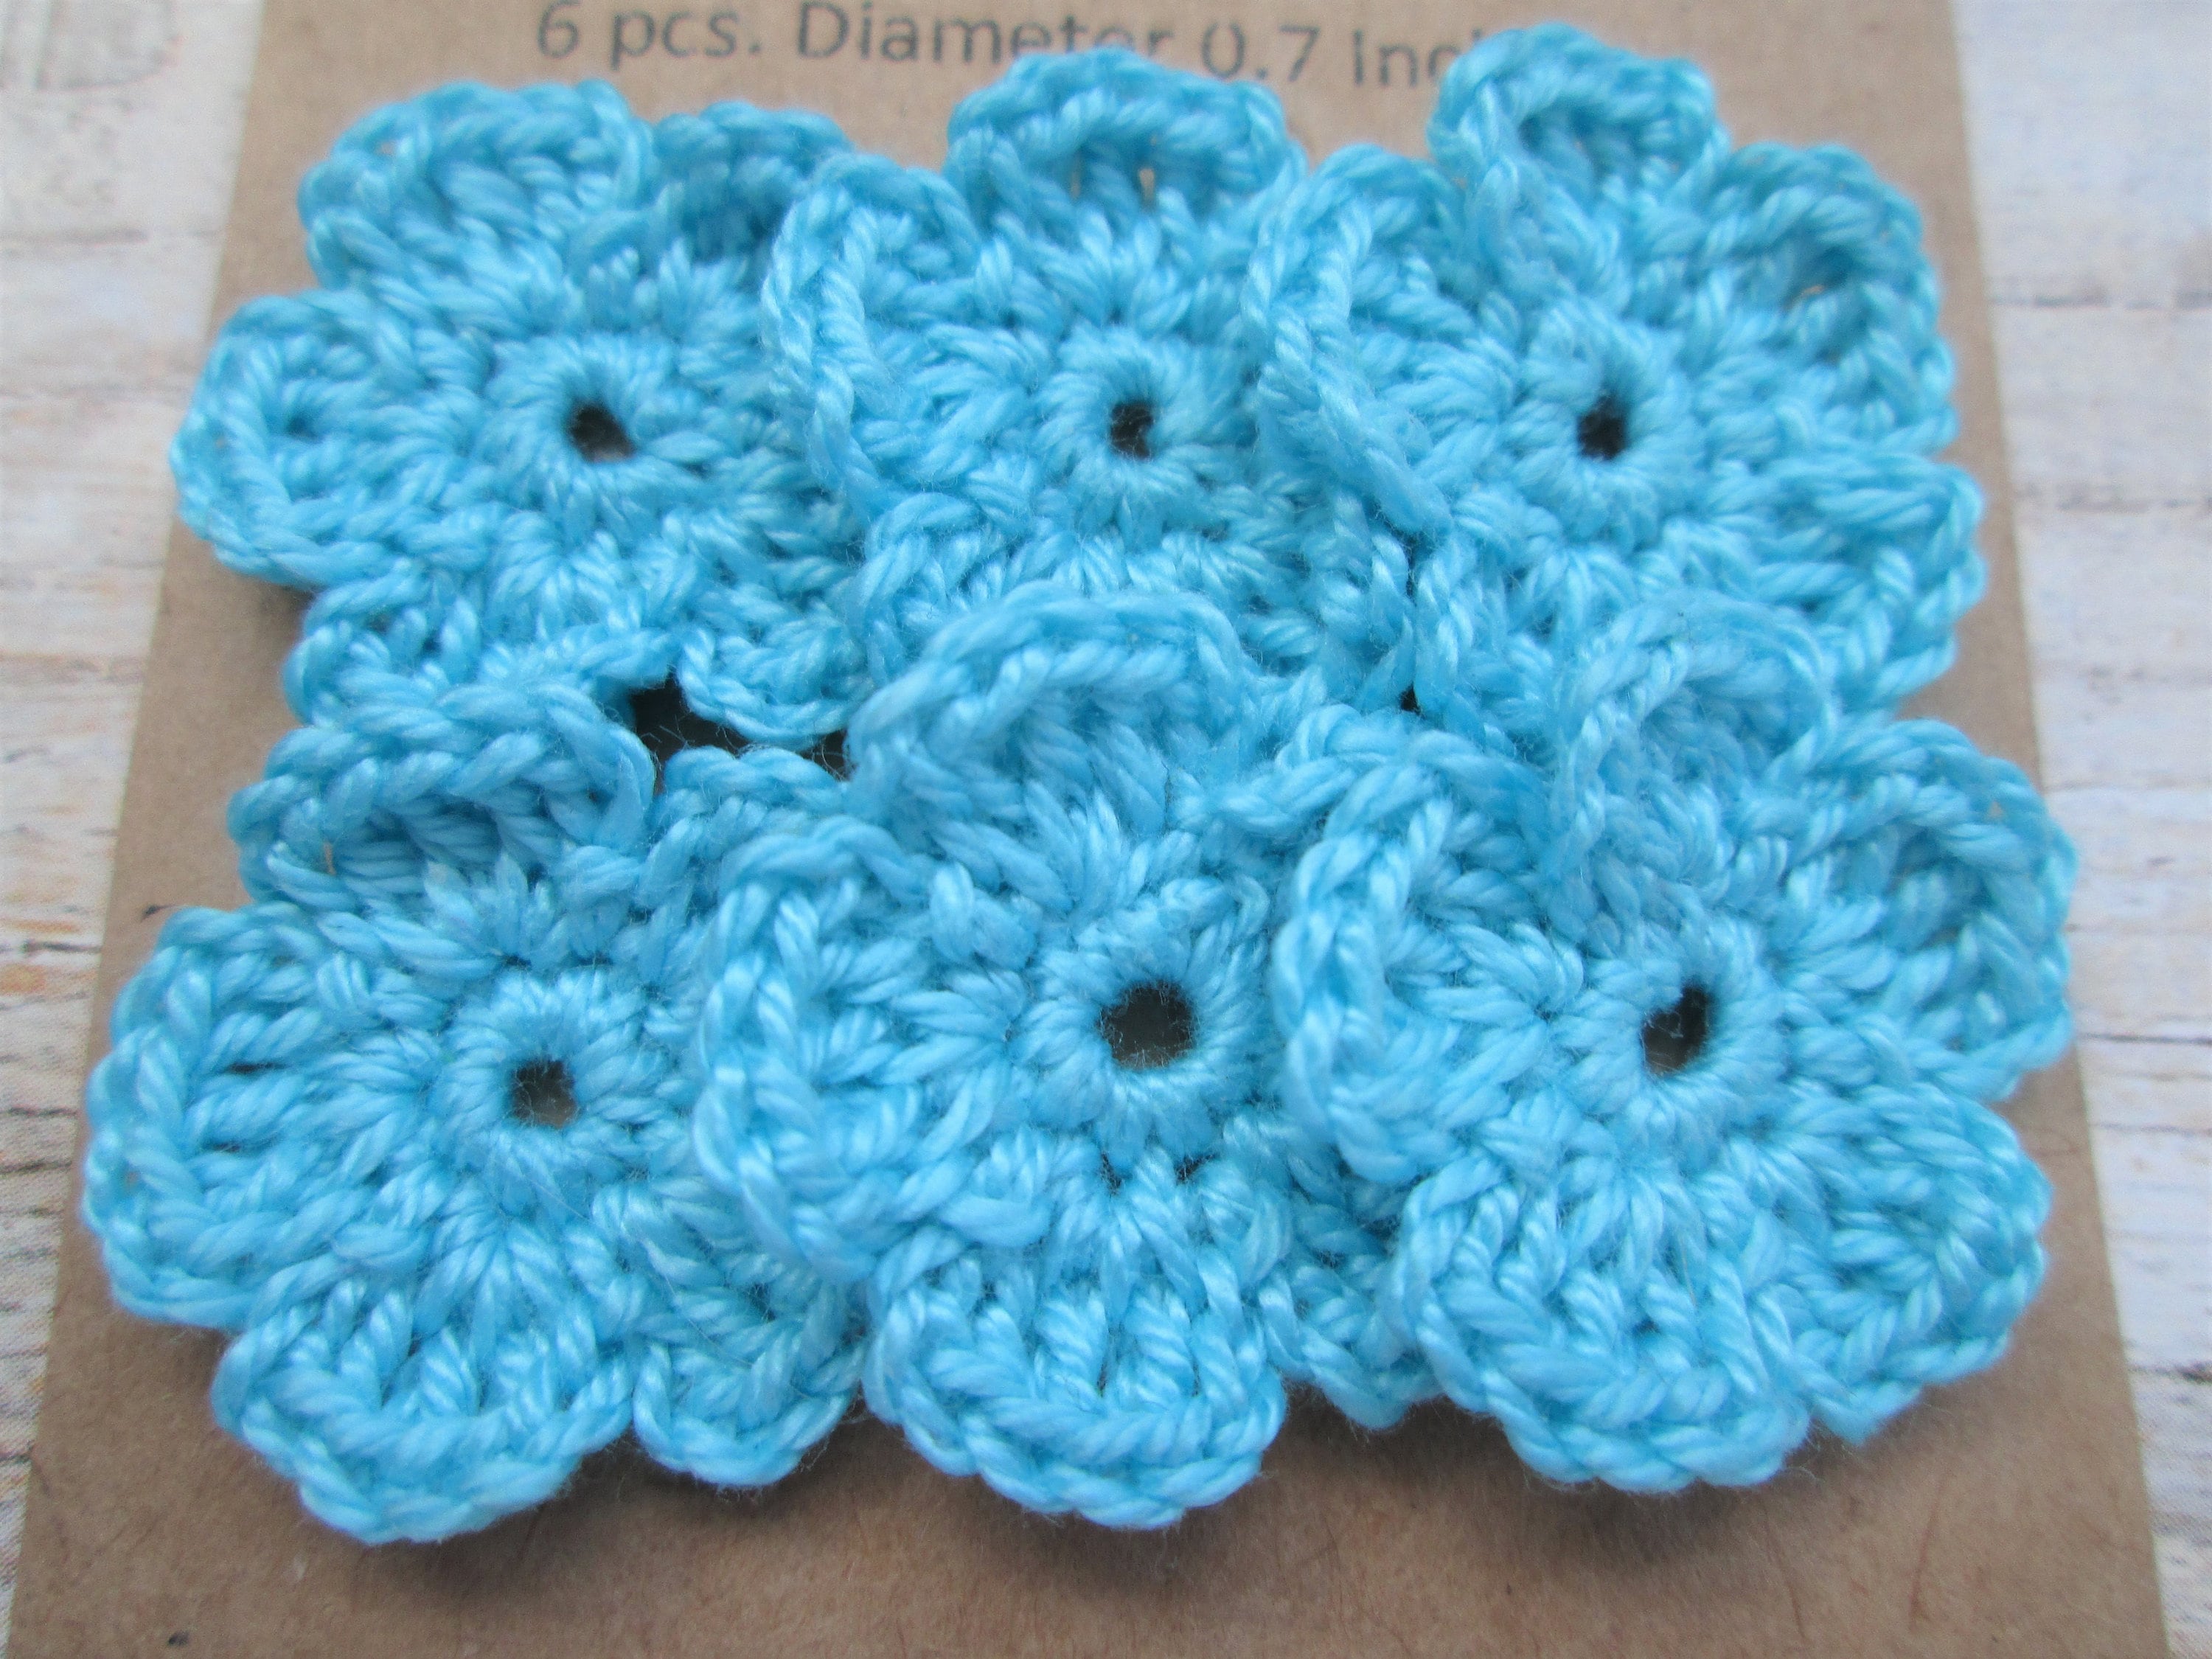 Small pale blue crochet flowers. Floral crochet applique | Etsy